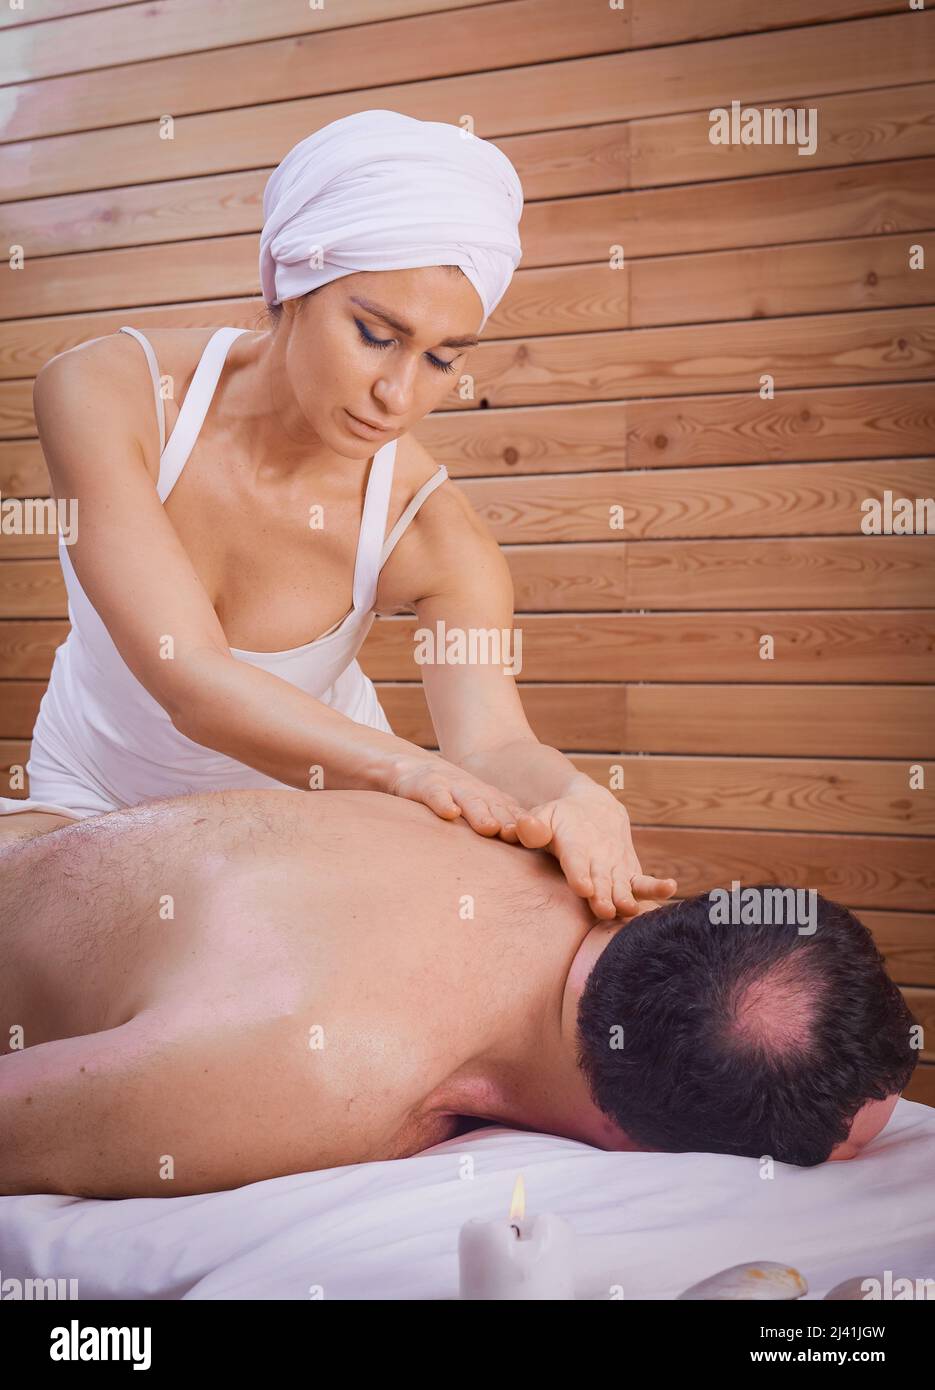 Una guaritrice femminile esegue un rituale con un massaggio alla schiena, strofinando la schiena di un uomo menzogna. Relax. Foto Stock